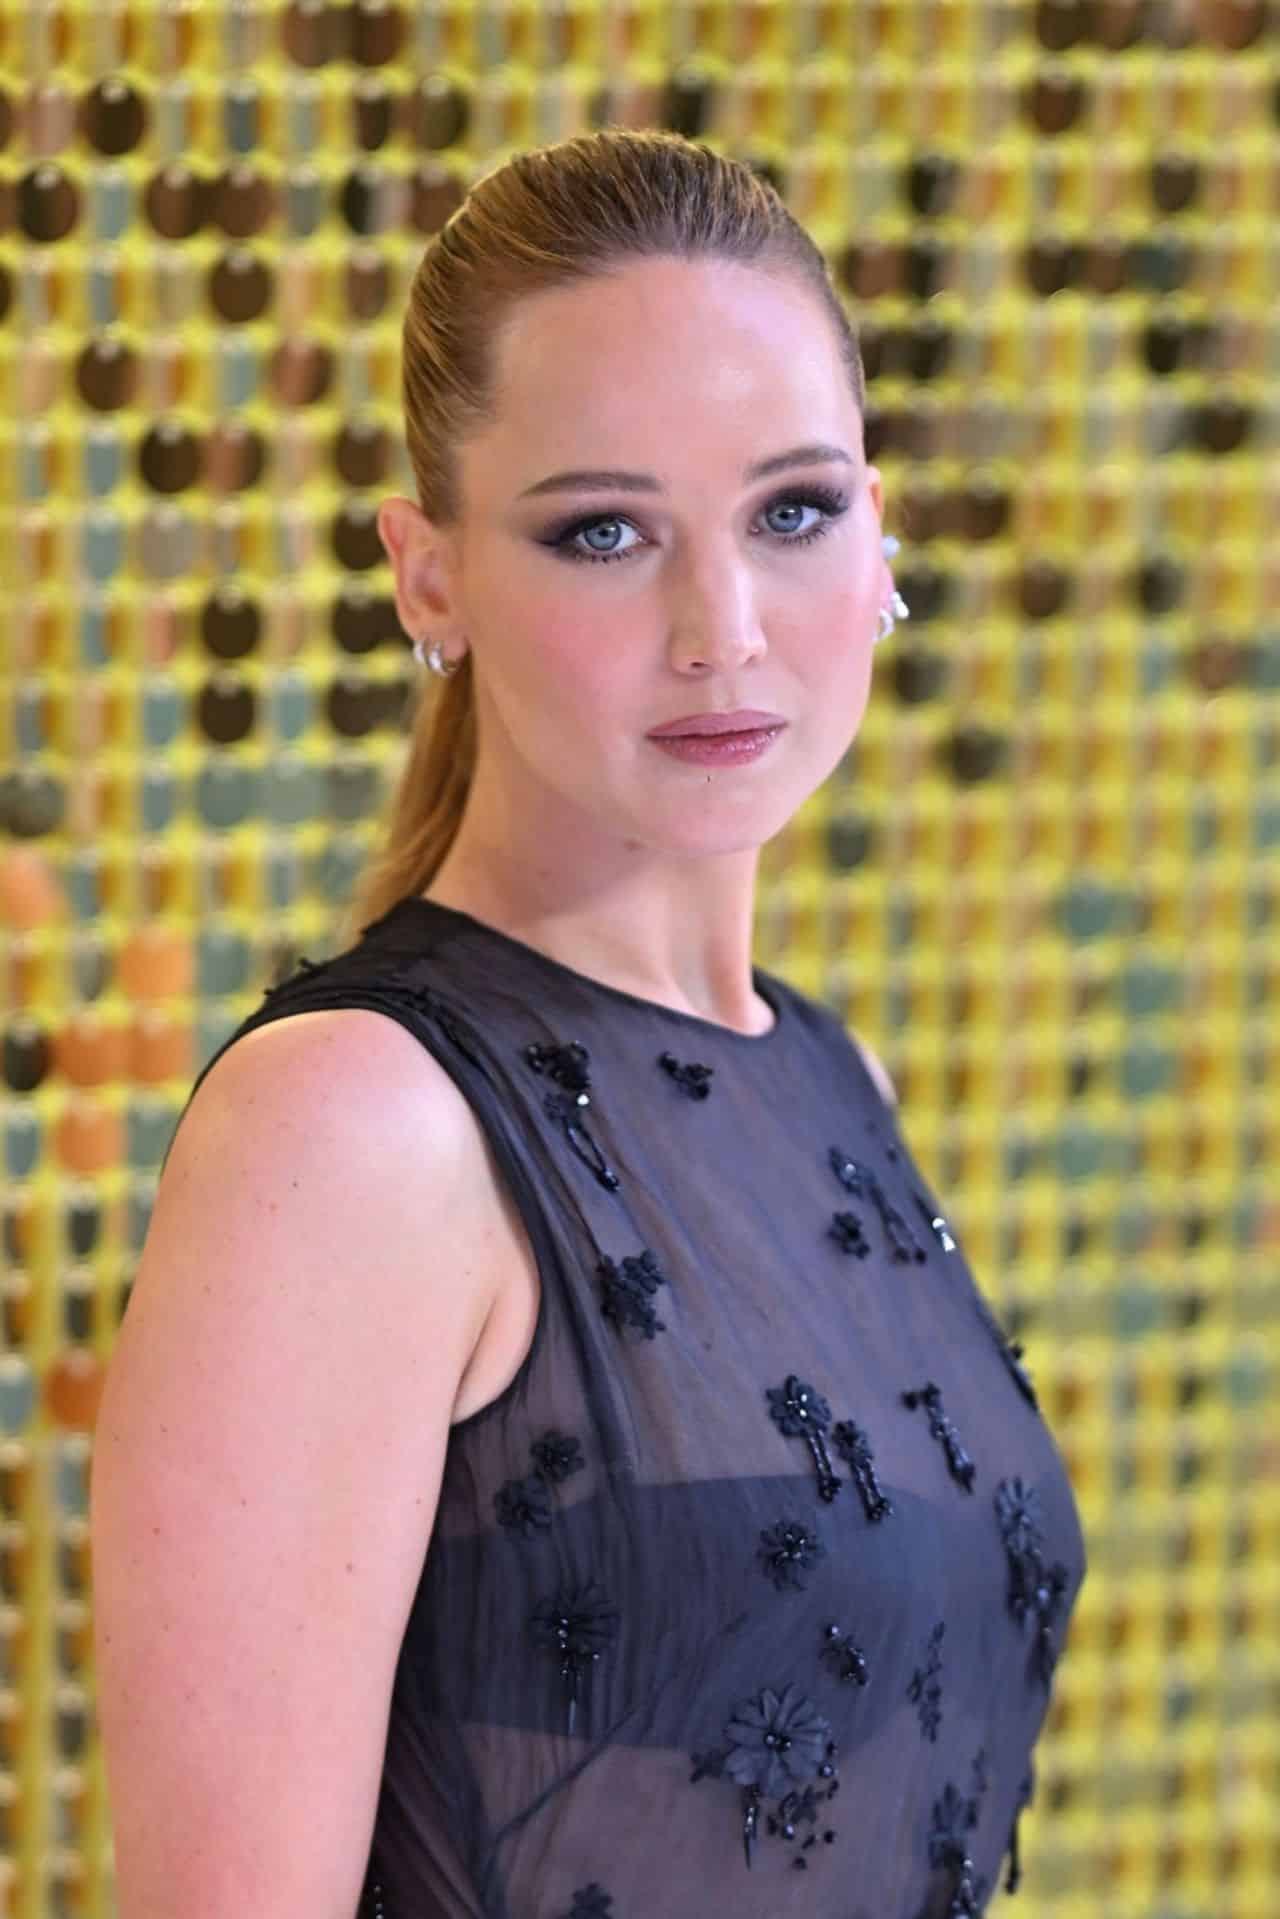 Jennifer Lawrence Wears Dior at "No Hard Feelings" Premiere in London